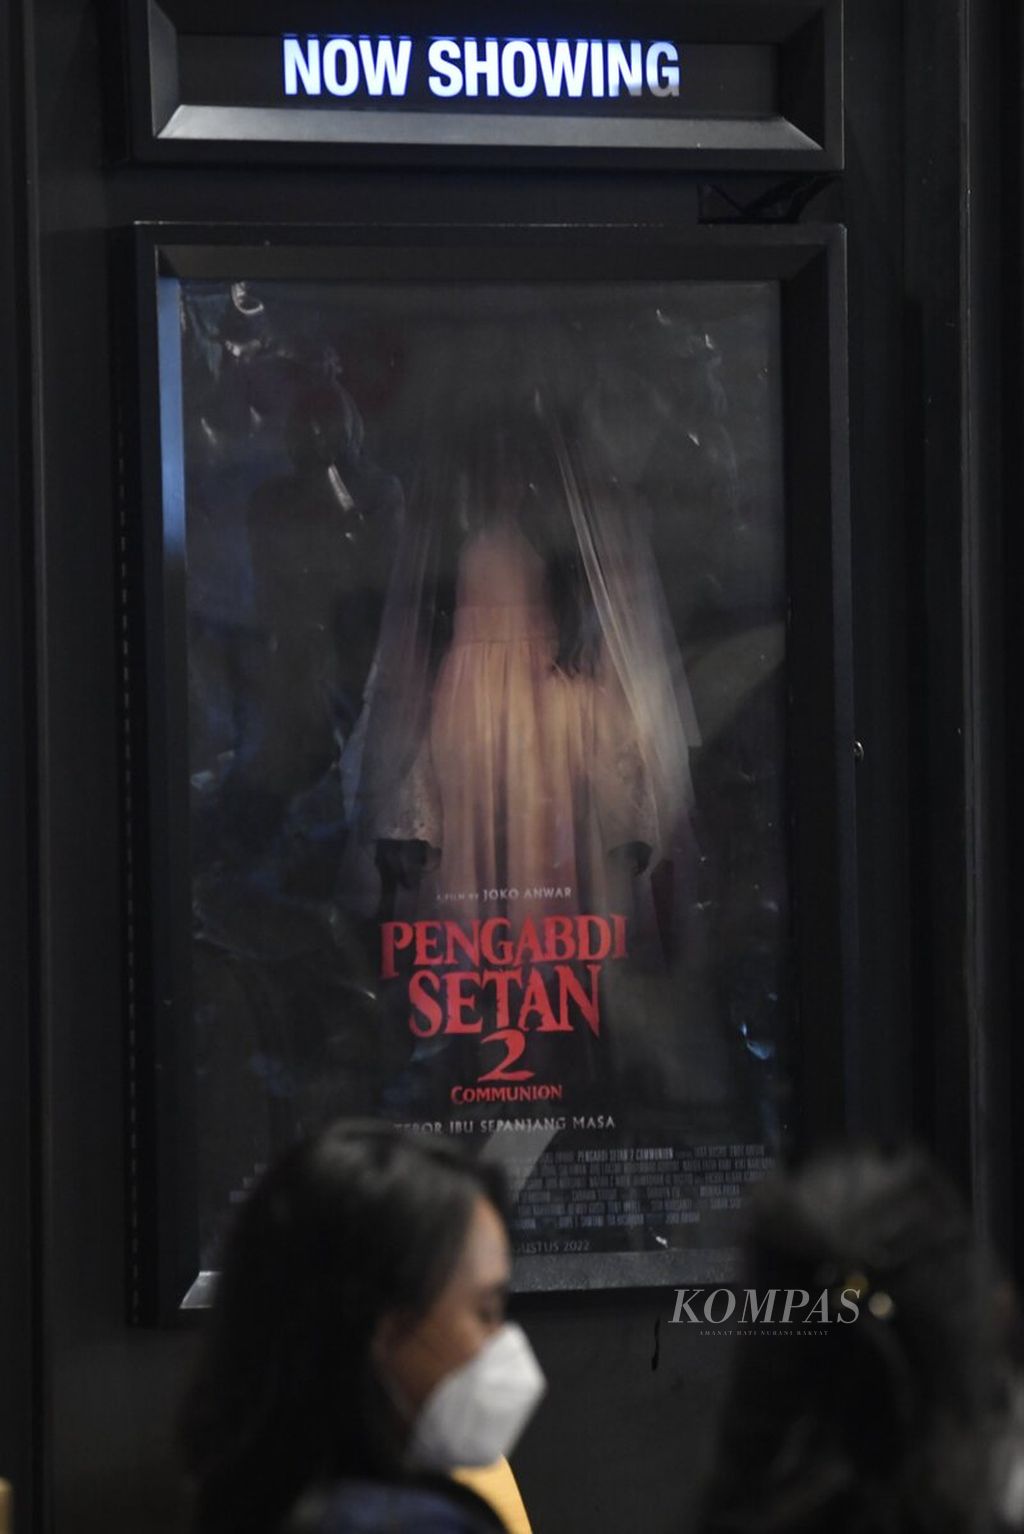 Poster film <i>Pengabdi Setan 2: Communion </i>di bioskop CGV Grand Indonesia, Jakarta, Kamis (4/8/2022). Film besutan sutradara Joko Anwar tersebut tayang perdana di bioskop di seluruh Indonesia pada 4 Agustus 2022. 